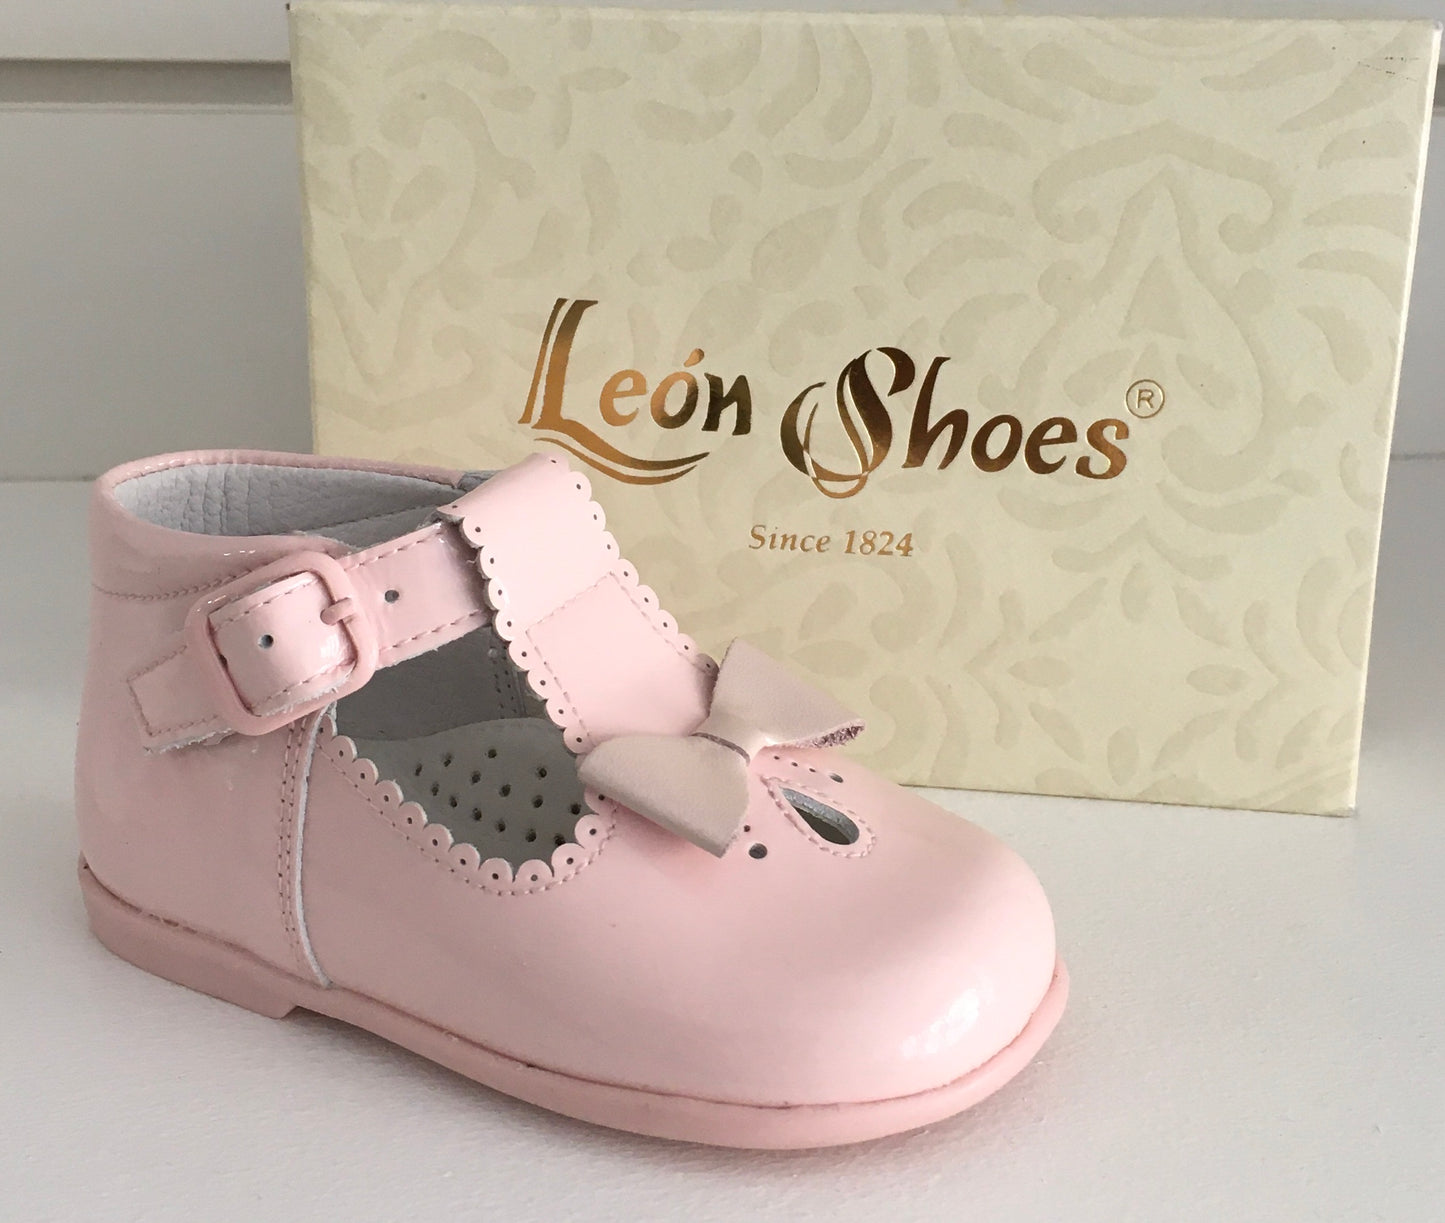 Leon Shoes Patent